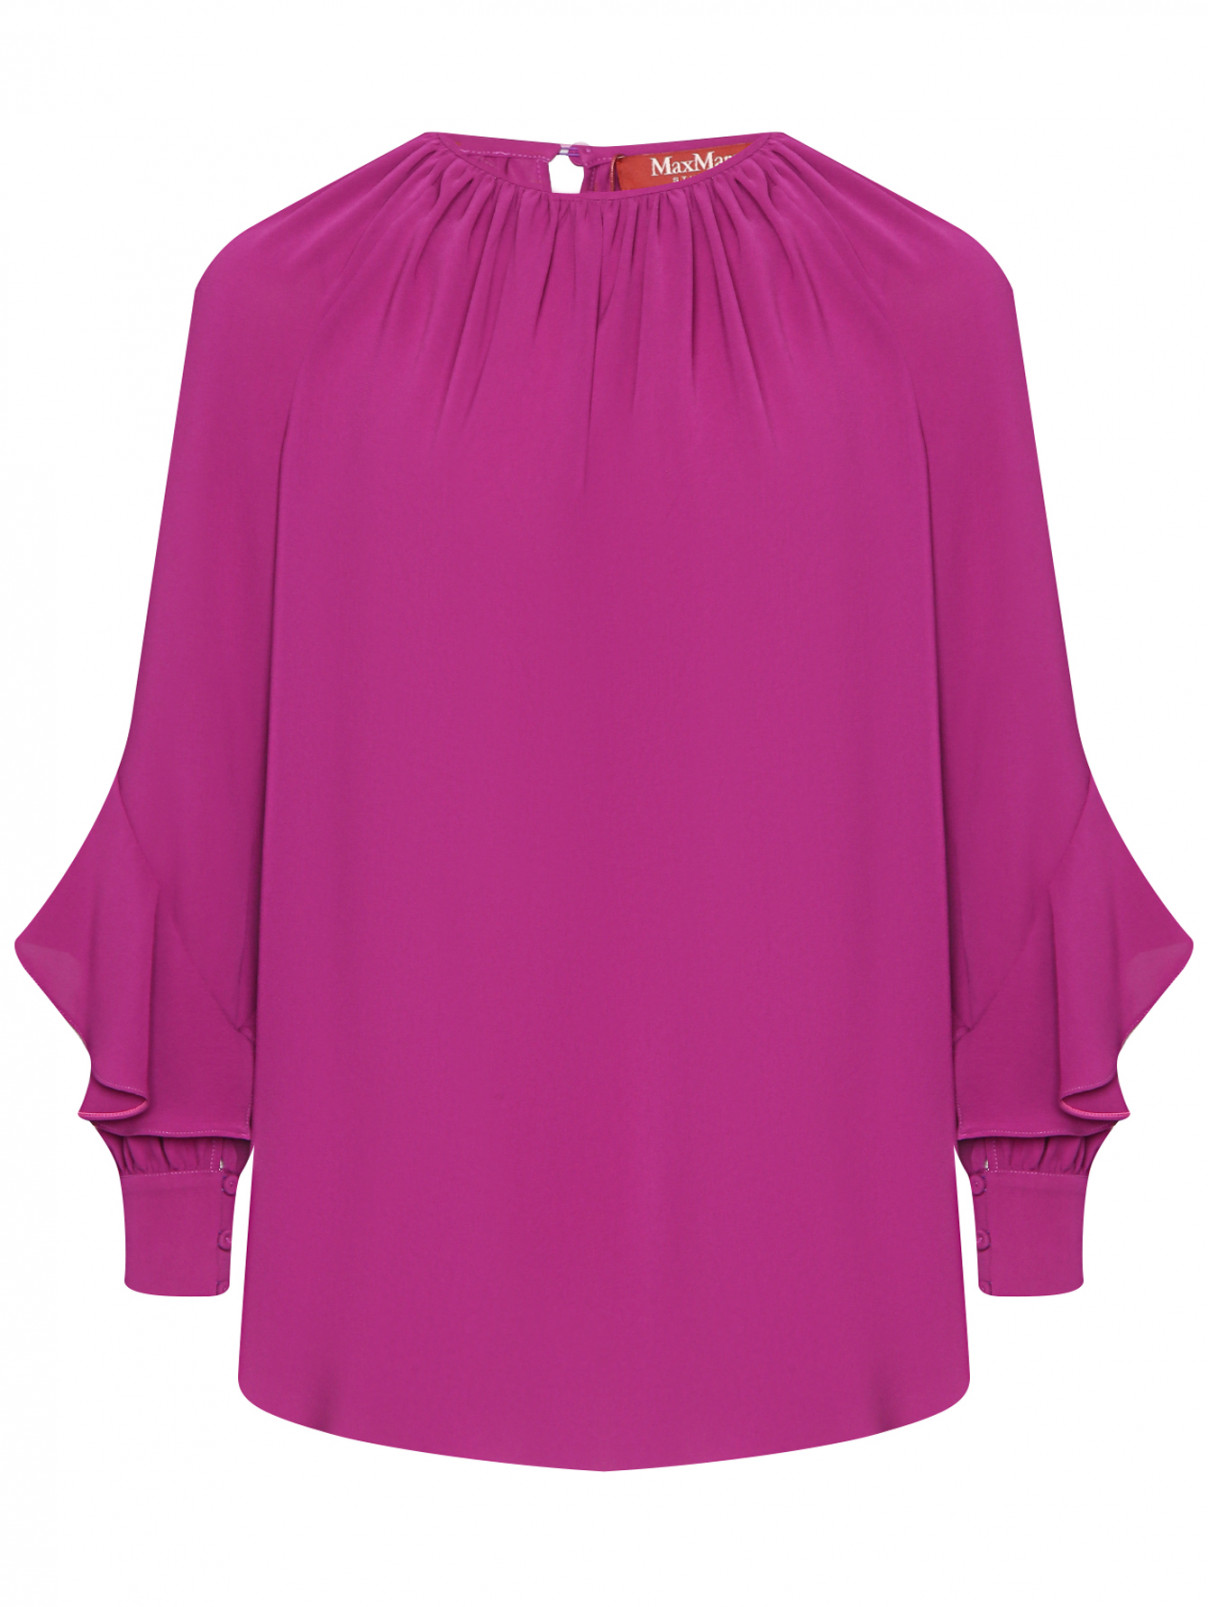 Блуза с воланами на рукавах Max Mara  –  Общий вид  – Цвет:  Фиолетовый